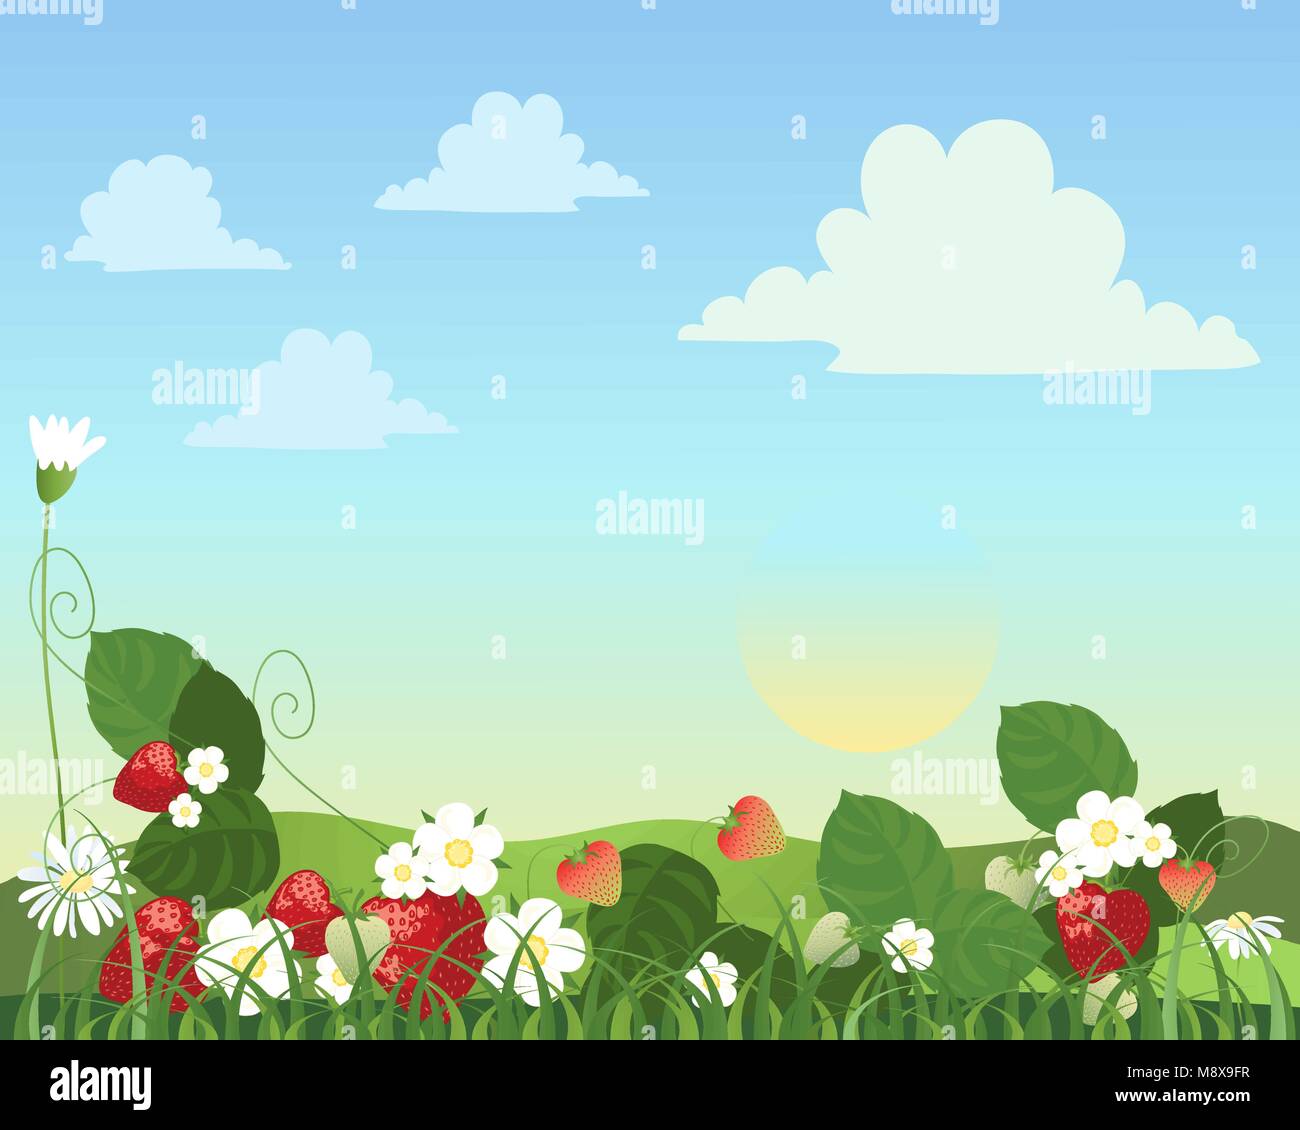 Una illustrazione vettoriale in formato eps formato 10 di una patch alla fragola con frutta e fiori di margherite con un paesaggio estivo in background Illustrazione Vettoriale